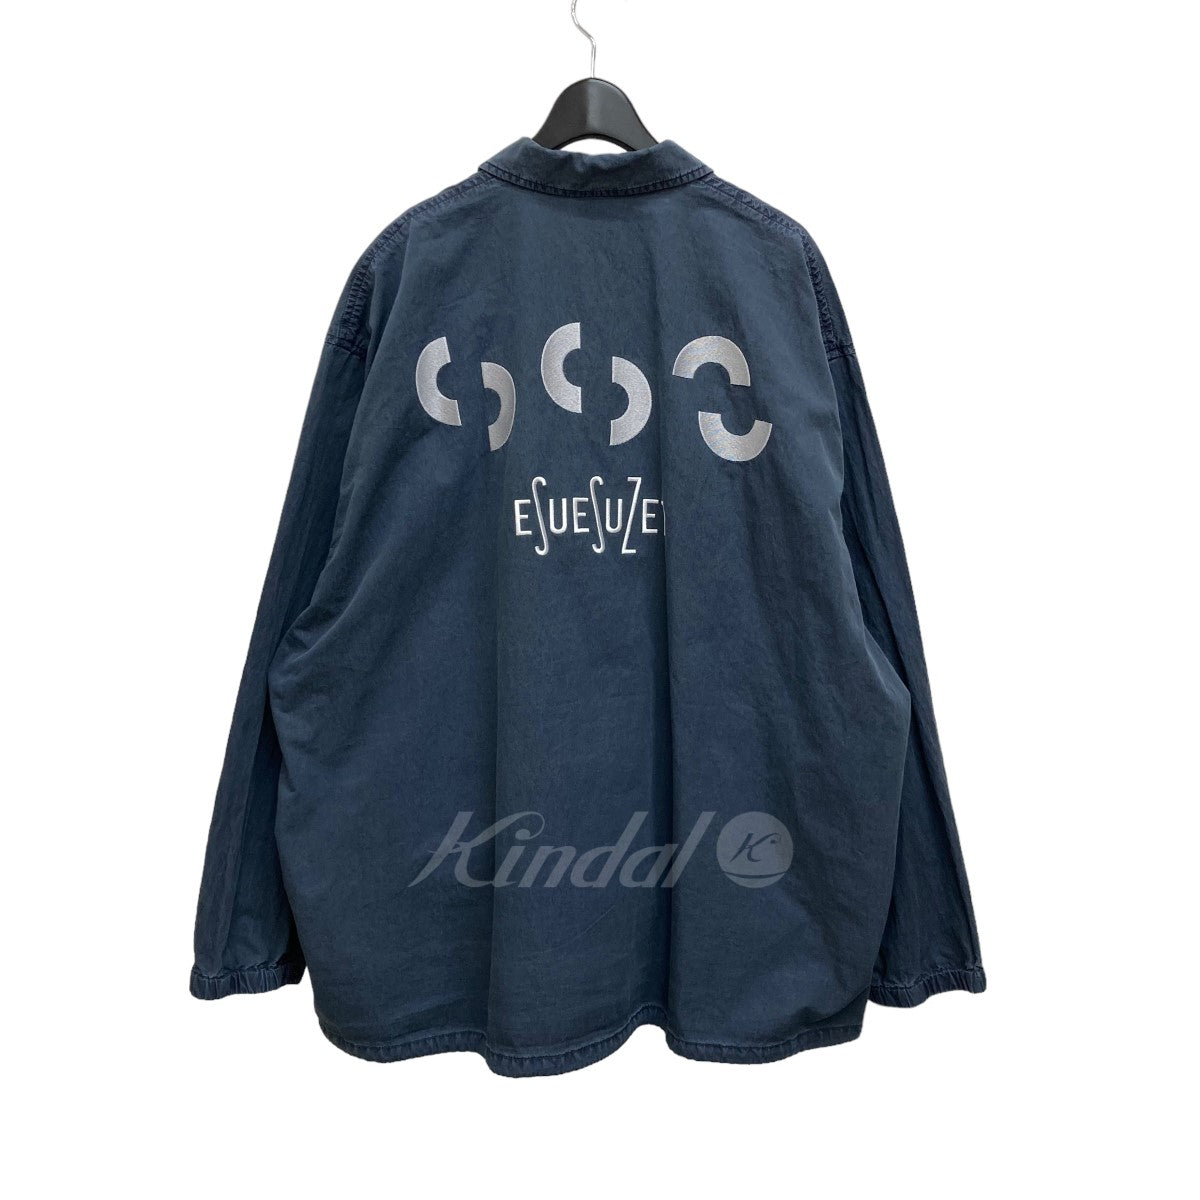 SSZ(エスエスズィー) ESU2ZET Jacket コーチジャケット 11-18-1216-139 